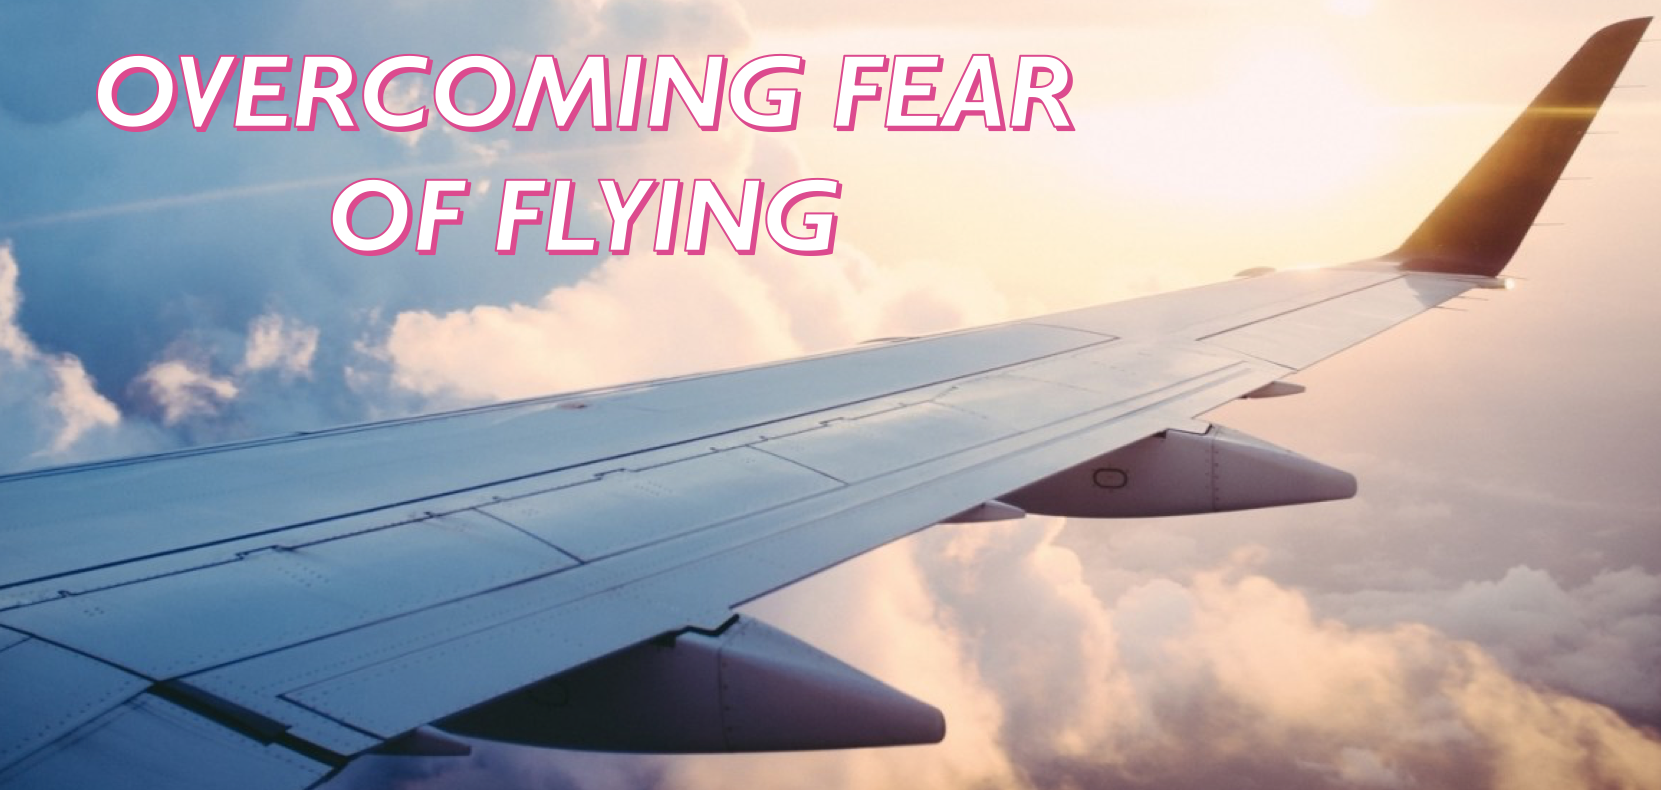 FEAR OF FLYING